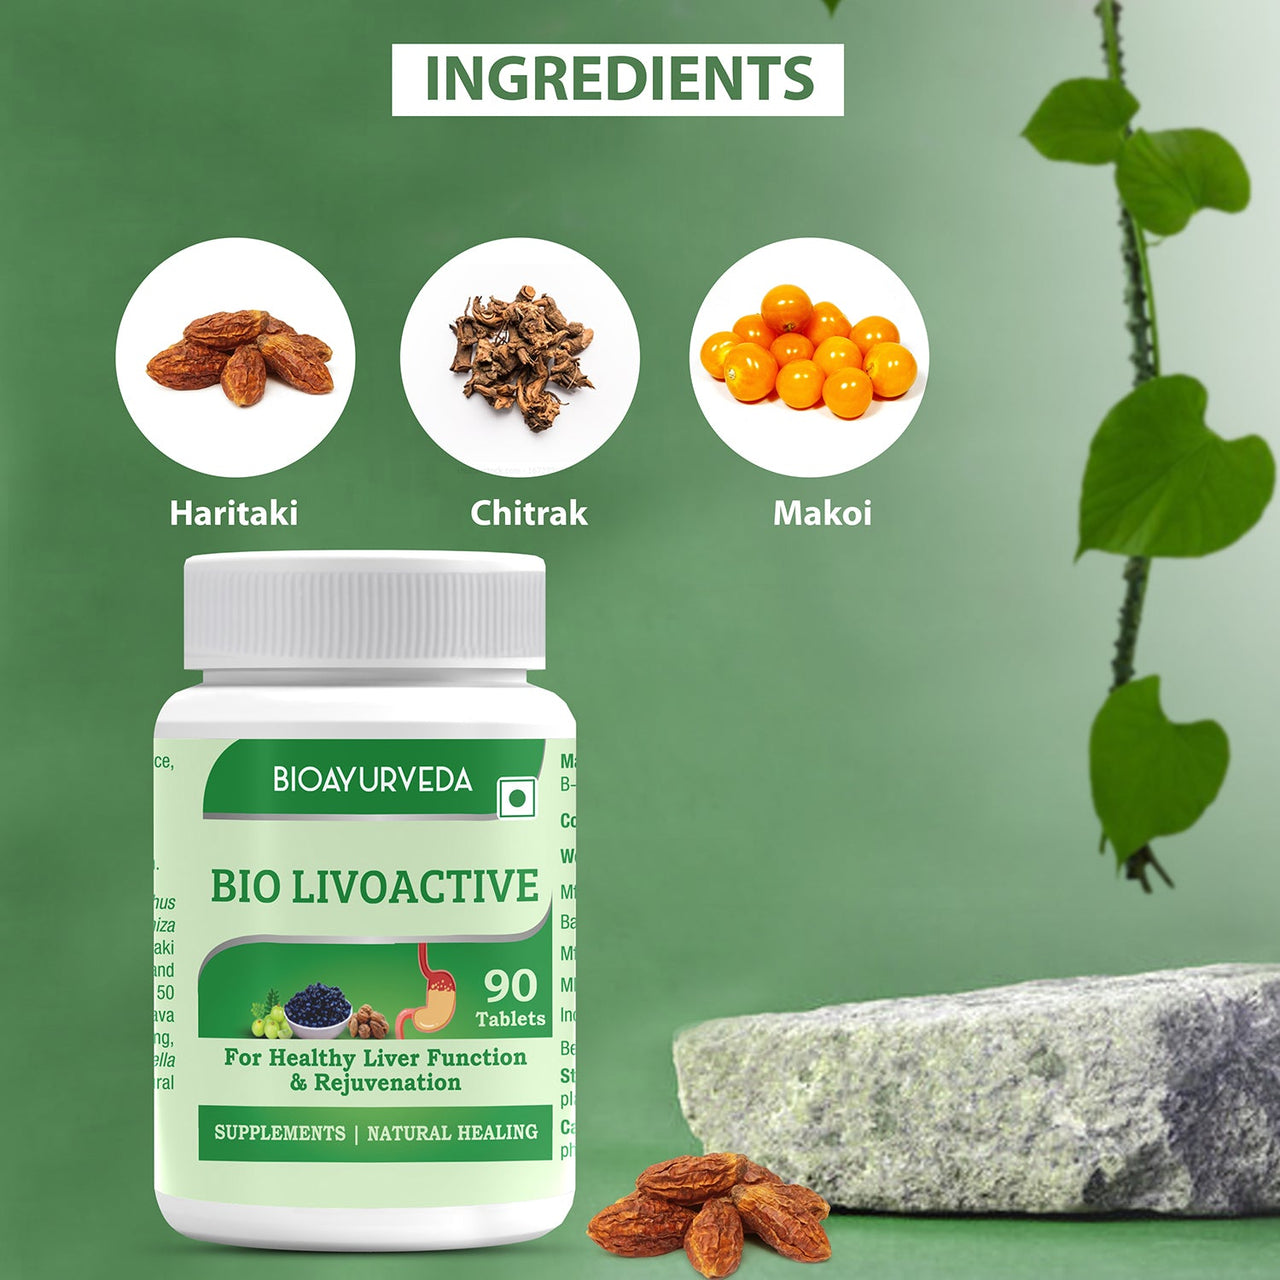 Ingredients In Bio Livoactive Tablet